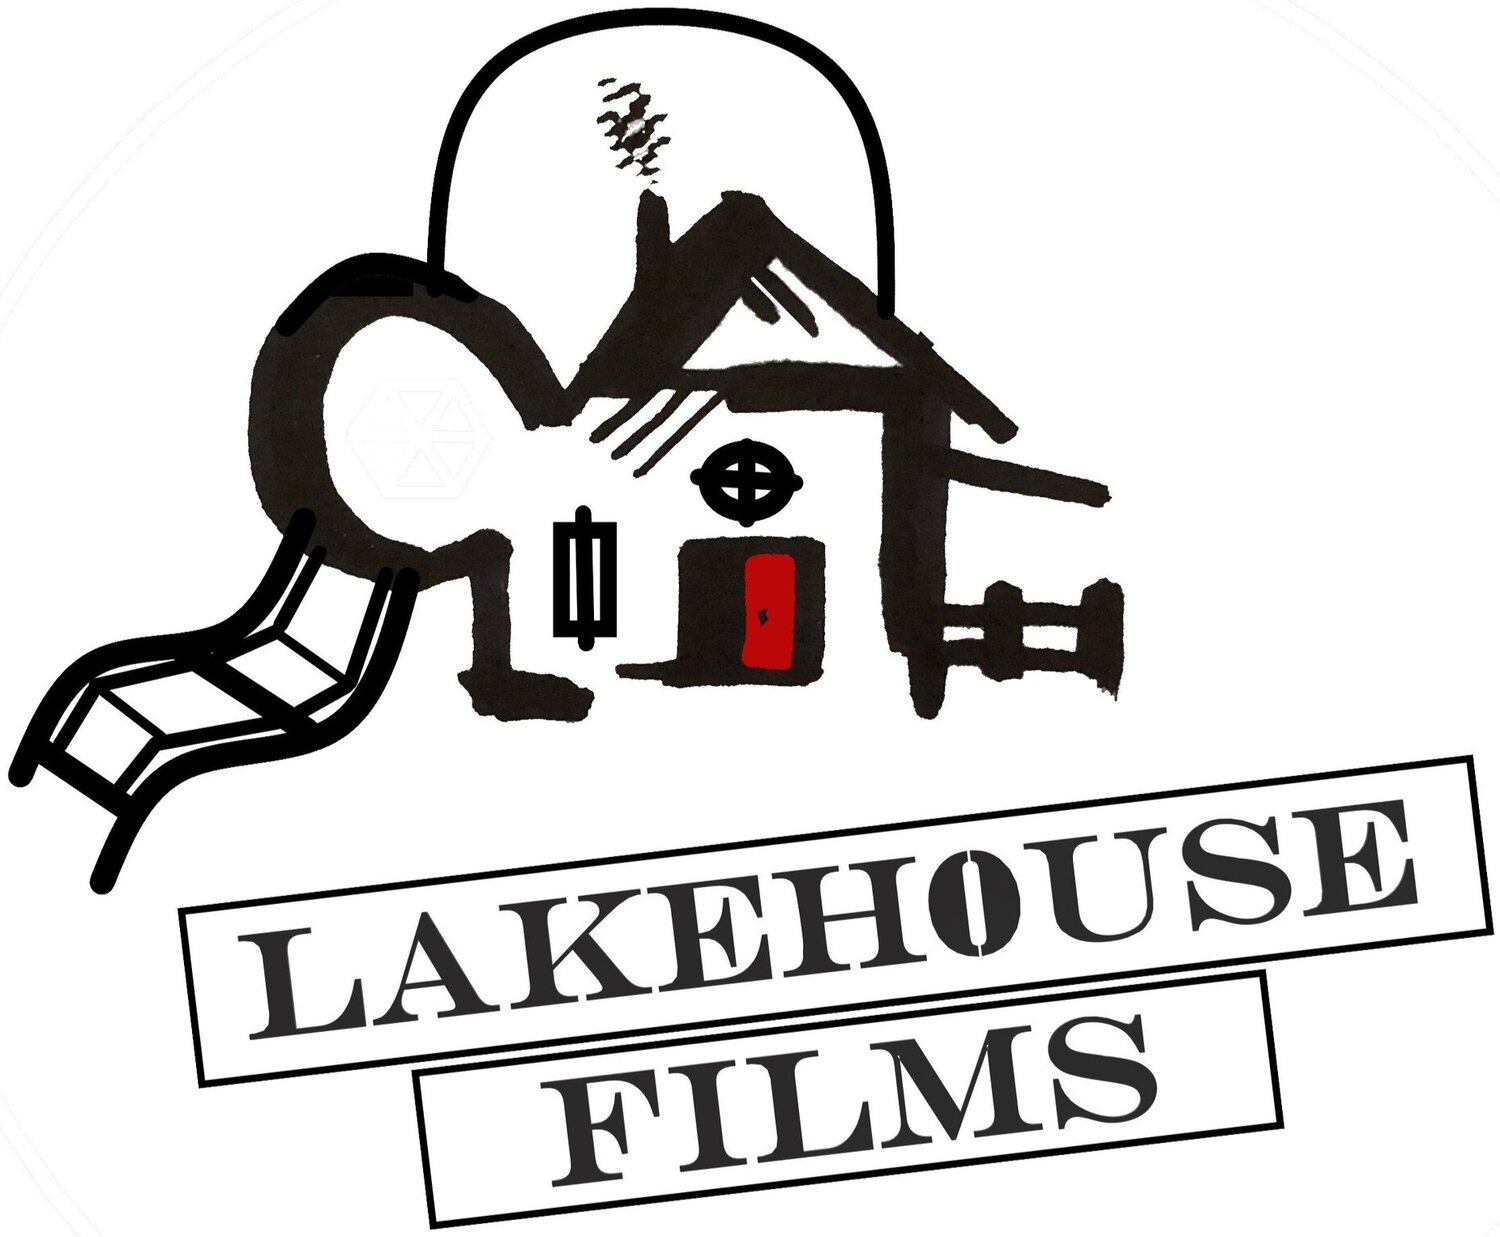 LAKEHOUSE FILMS